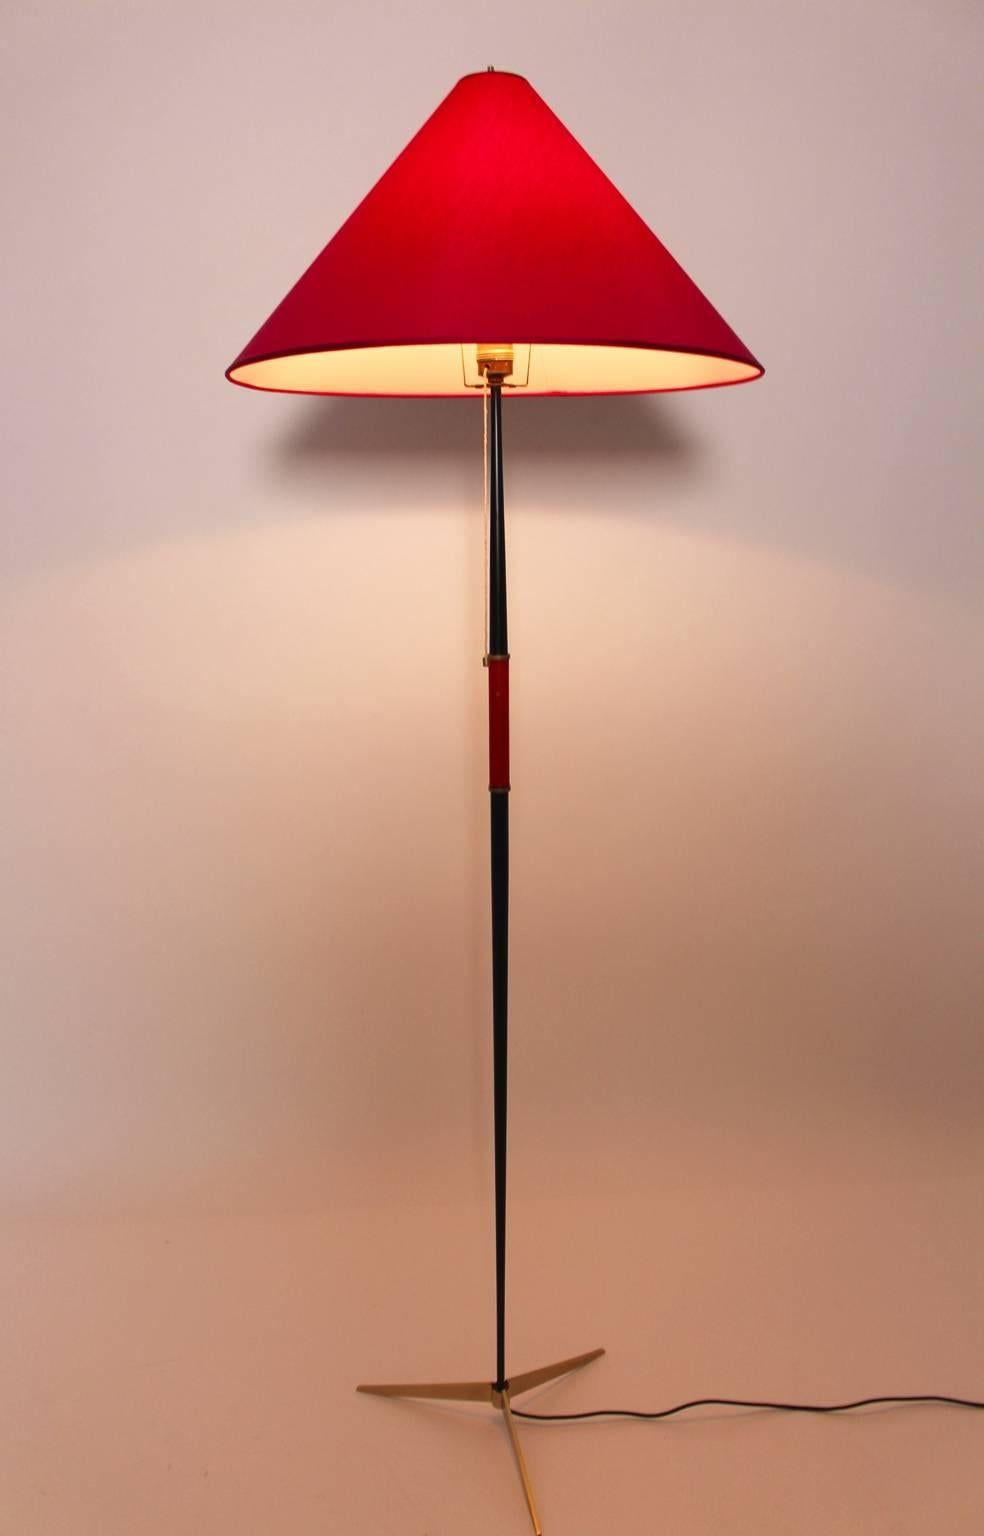 Lampadaire vintage moderne du milieu du siècle dernier, conçu et réalisé par J. T. Kalmar Vienne, vers 1960, en laiton et métal.
Le lampadaire se compose d'un pied tripode en laiton et d'un tube conique en métal laqué noir. Le lampadaire comporte